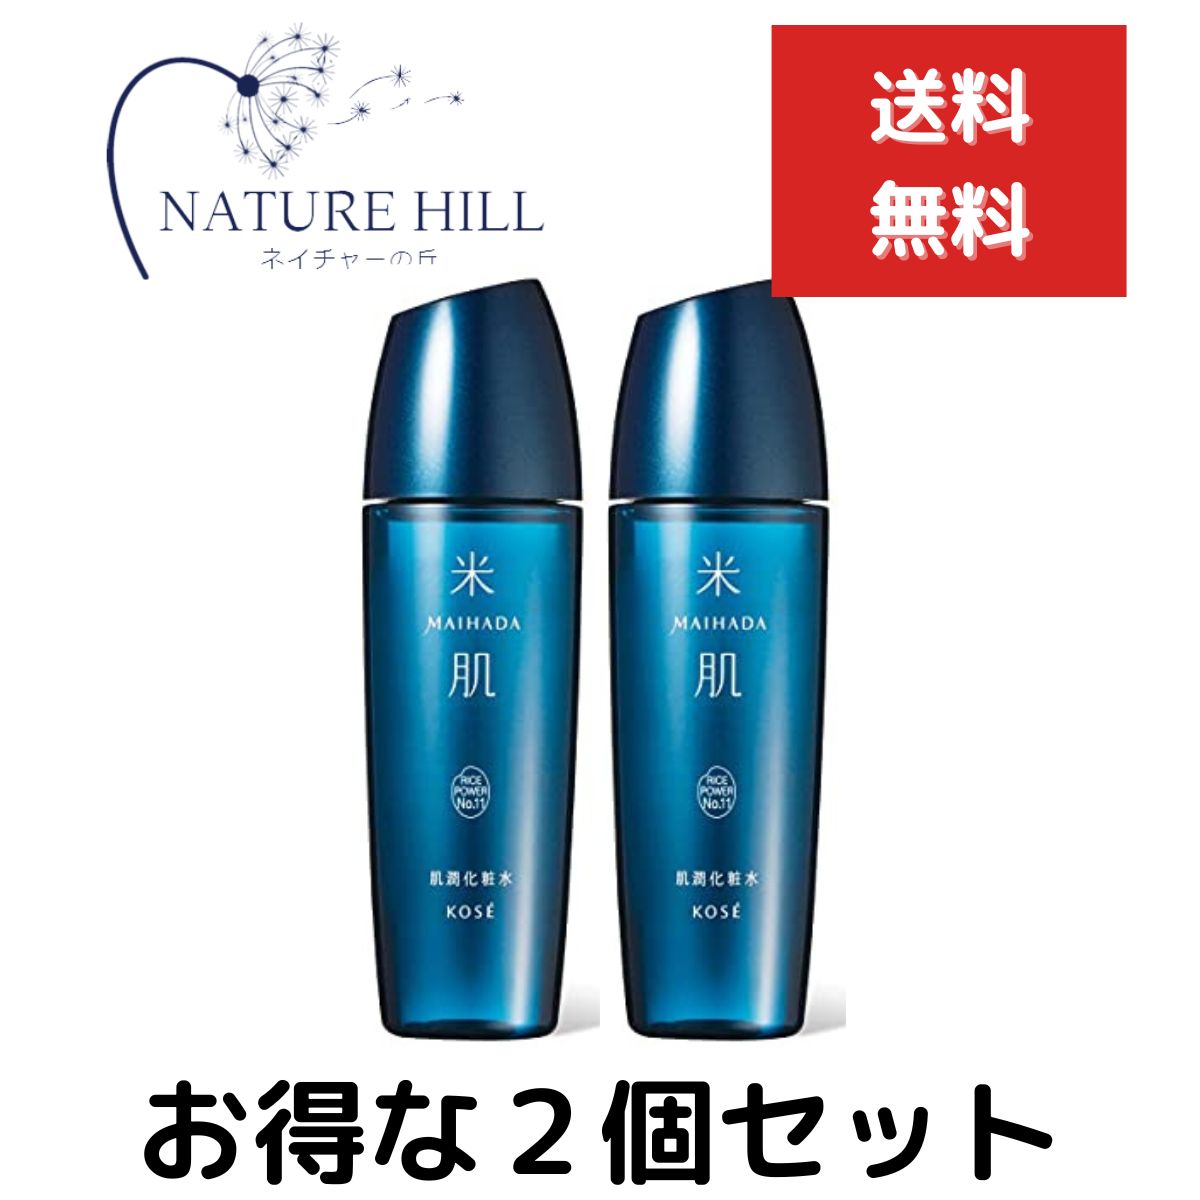 米肌 化粧水 コーセー 米肌(MAIHADA) 肌潤 肌潤化粧水 120mL 2個セット 化粧水 Kose